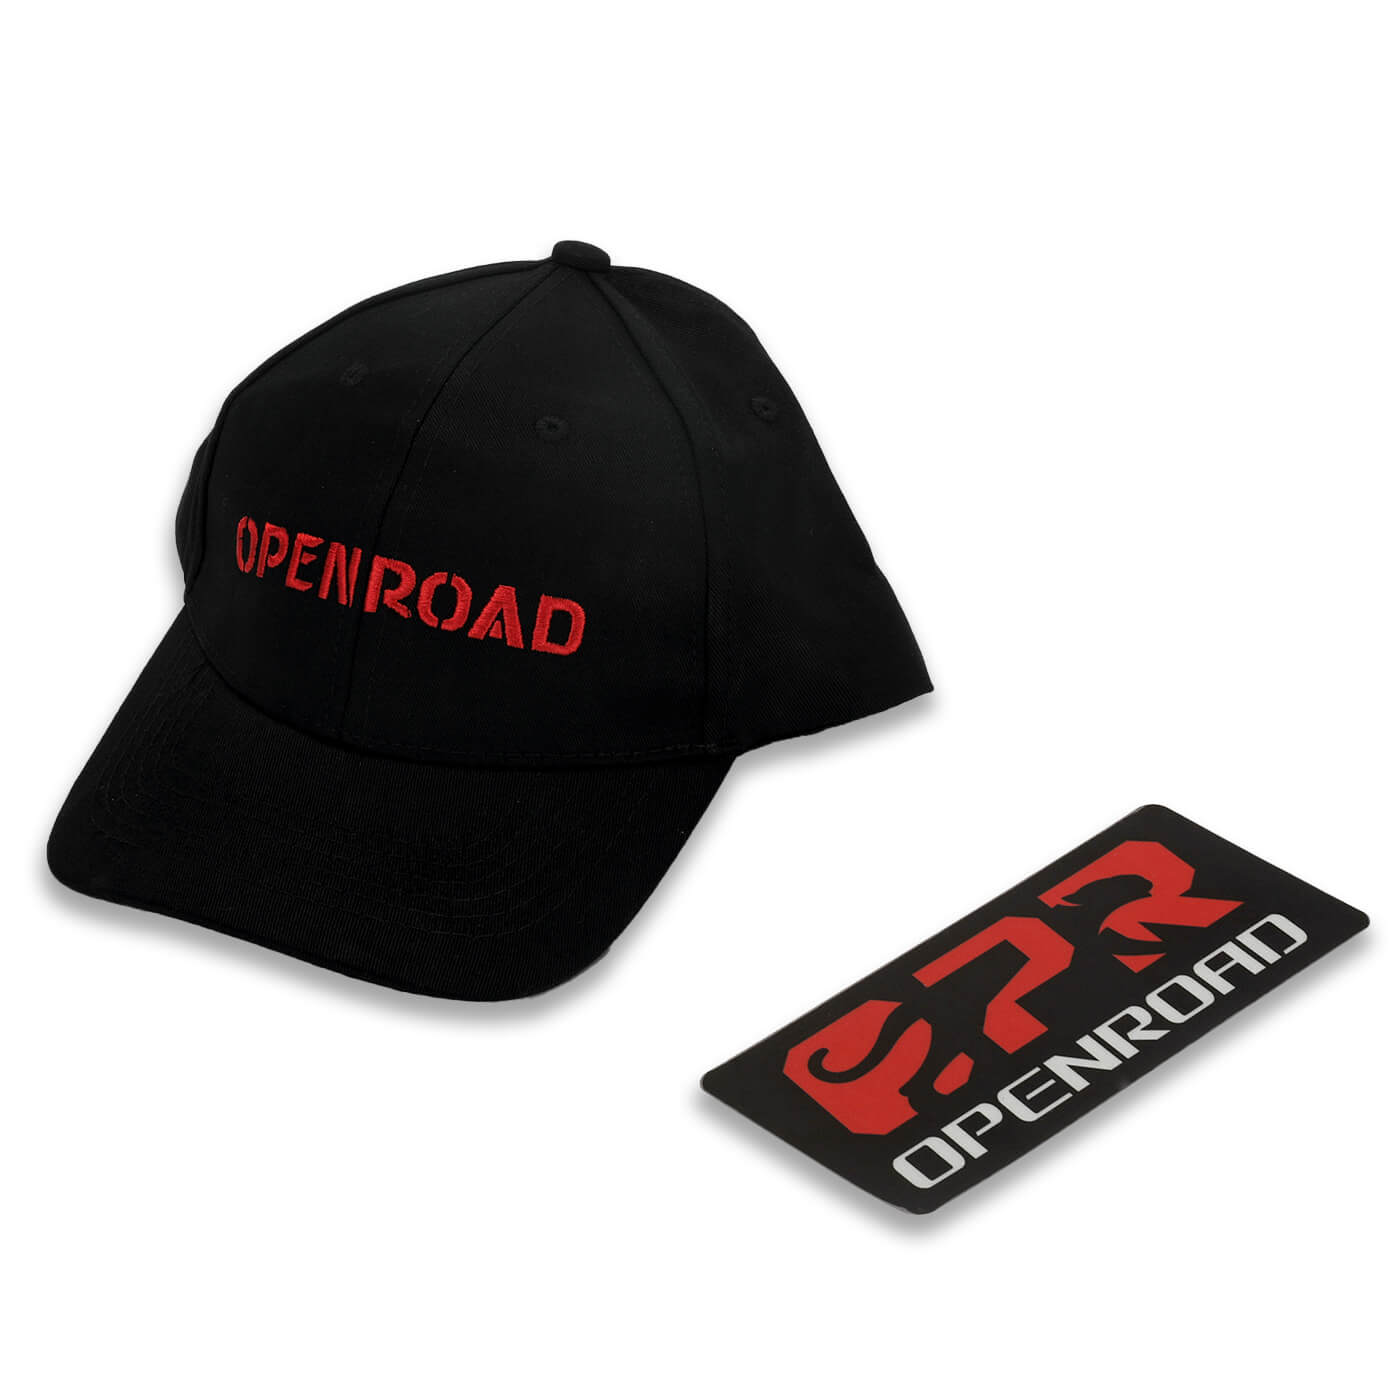 OPENROAD Hat & Fan Sticker  openroad4wd.com   